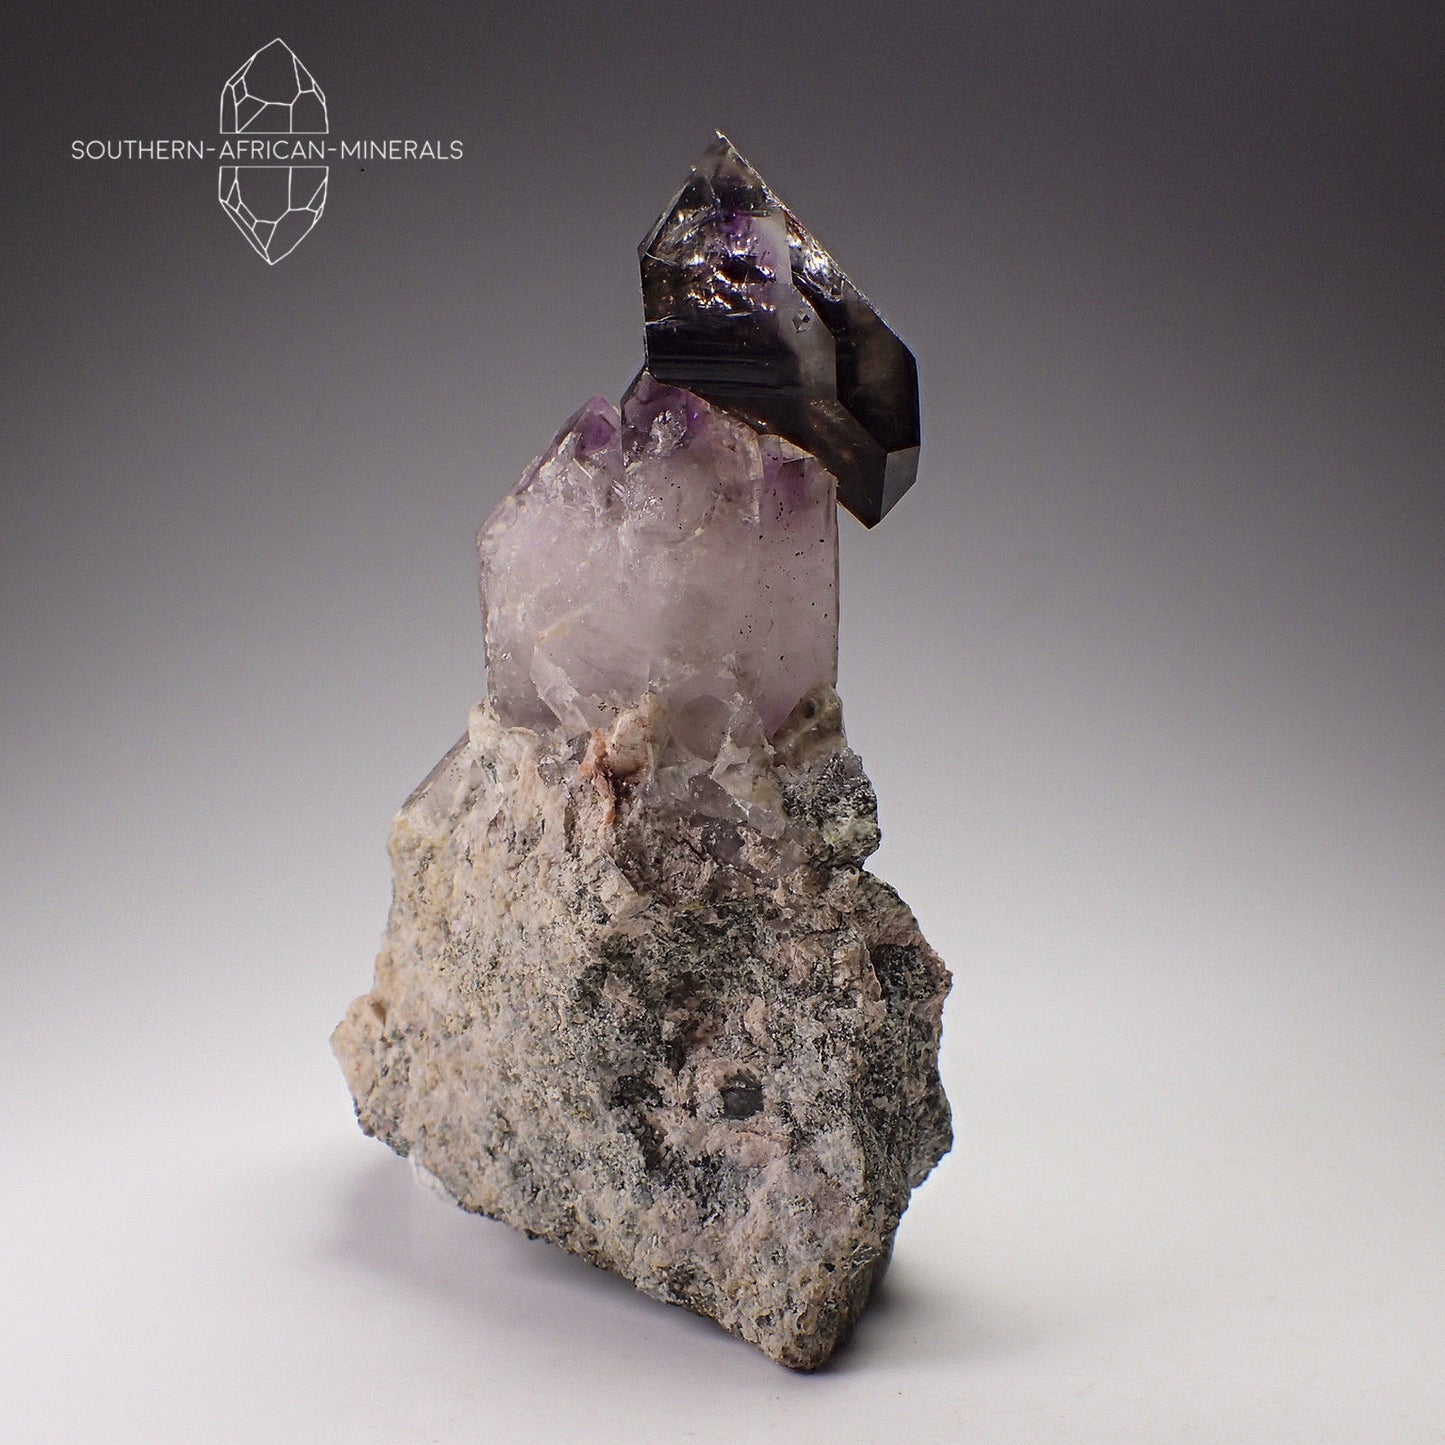 Brandberg Amethyst Smoky Sceptre Quartz Crystal on Matrix, Goboboseb, Namibia